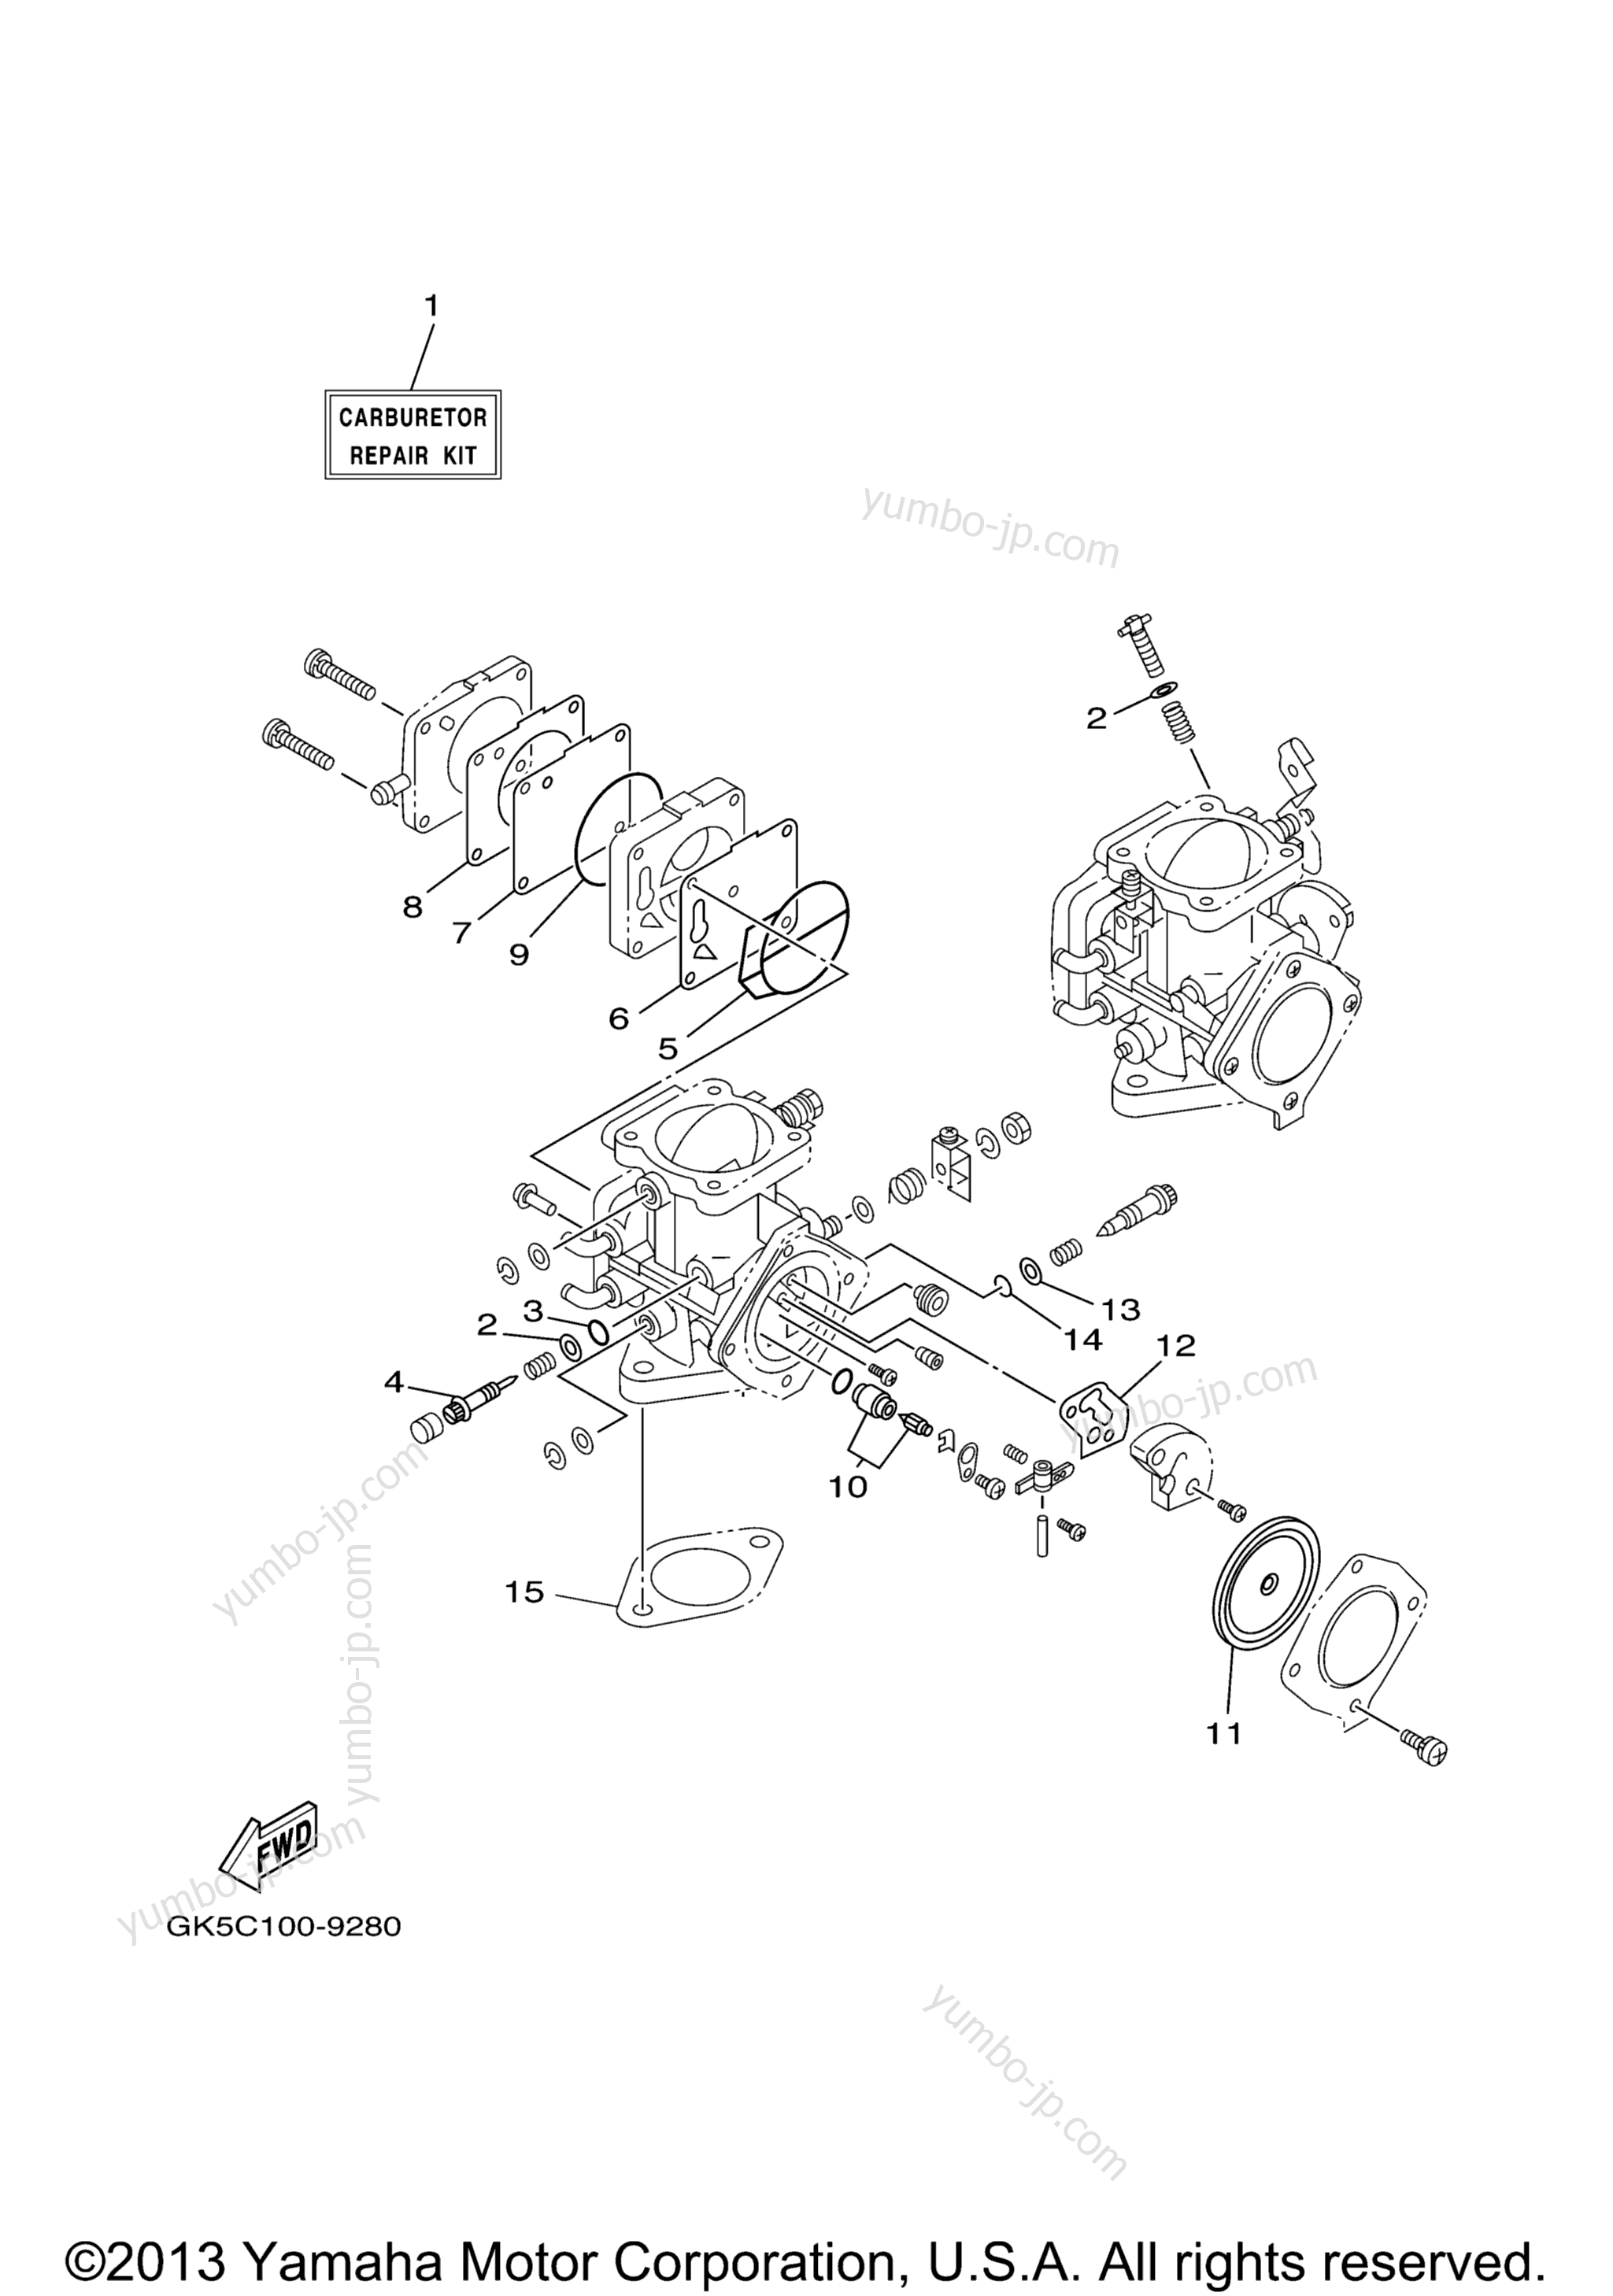 Repair Kit 2 для гидроциклов YAMAHA GP760 (GP760Y) 2000 г.